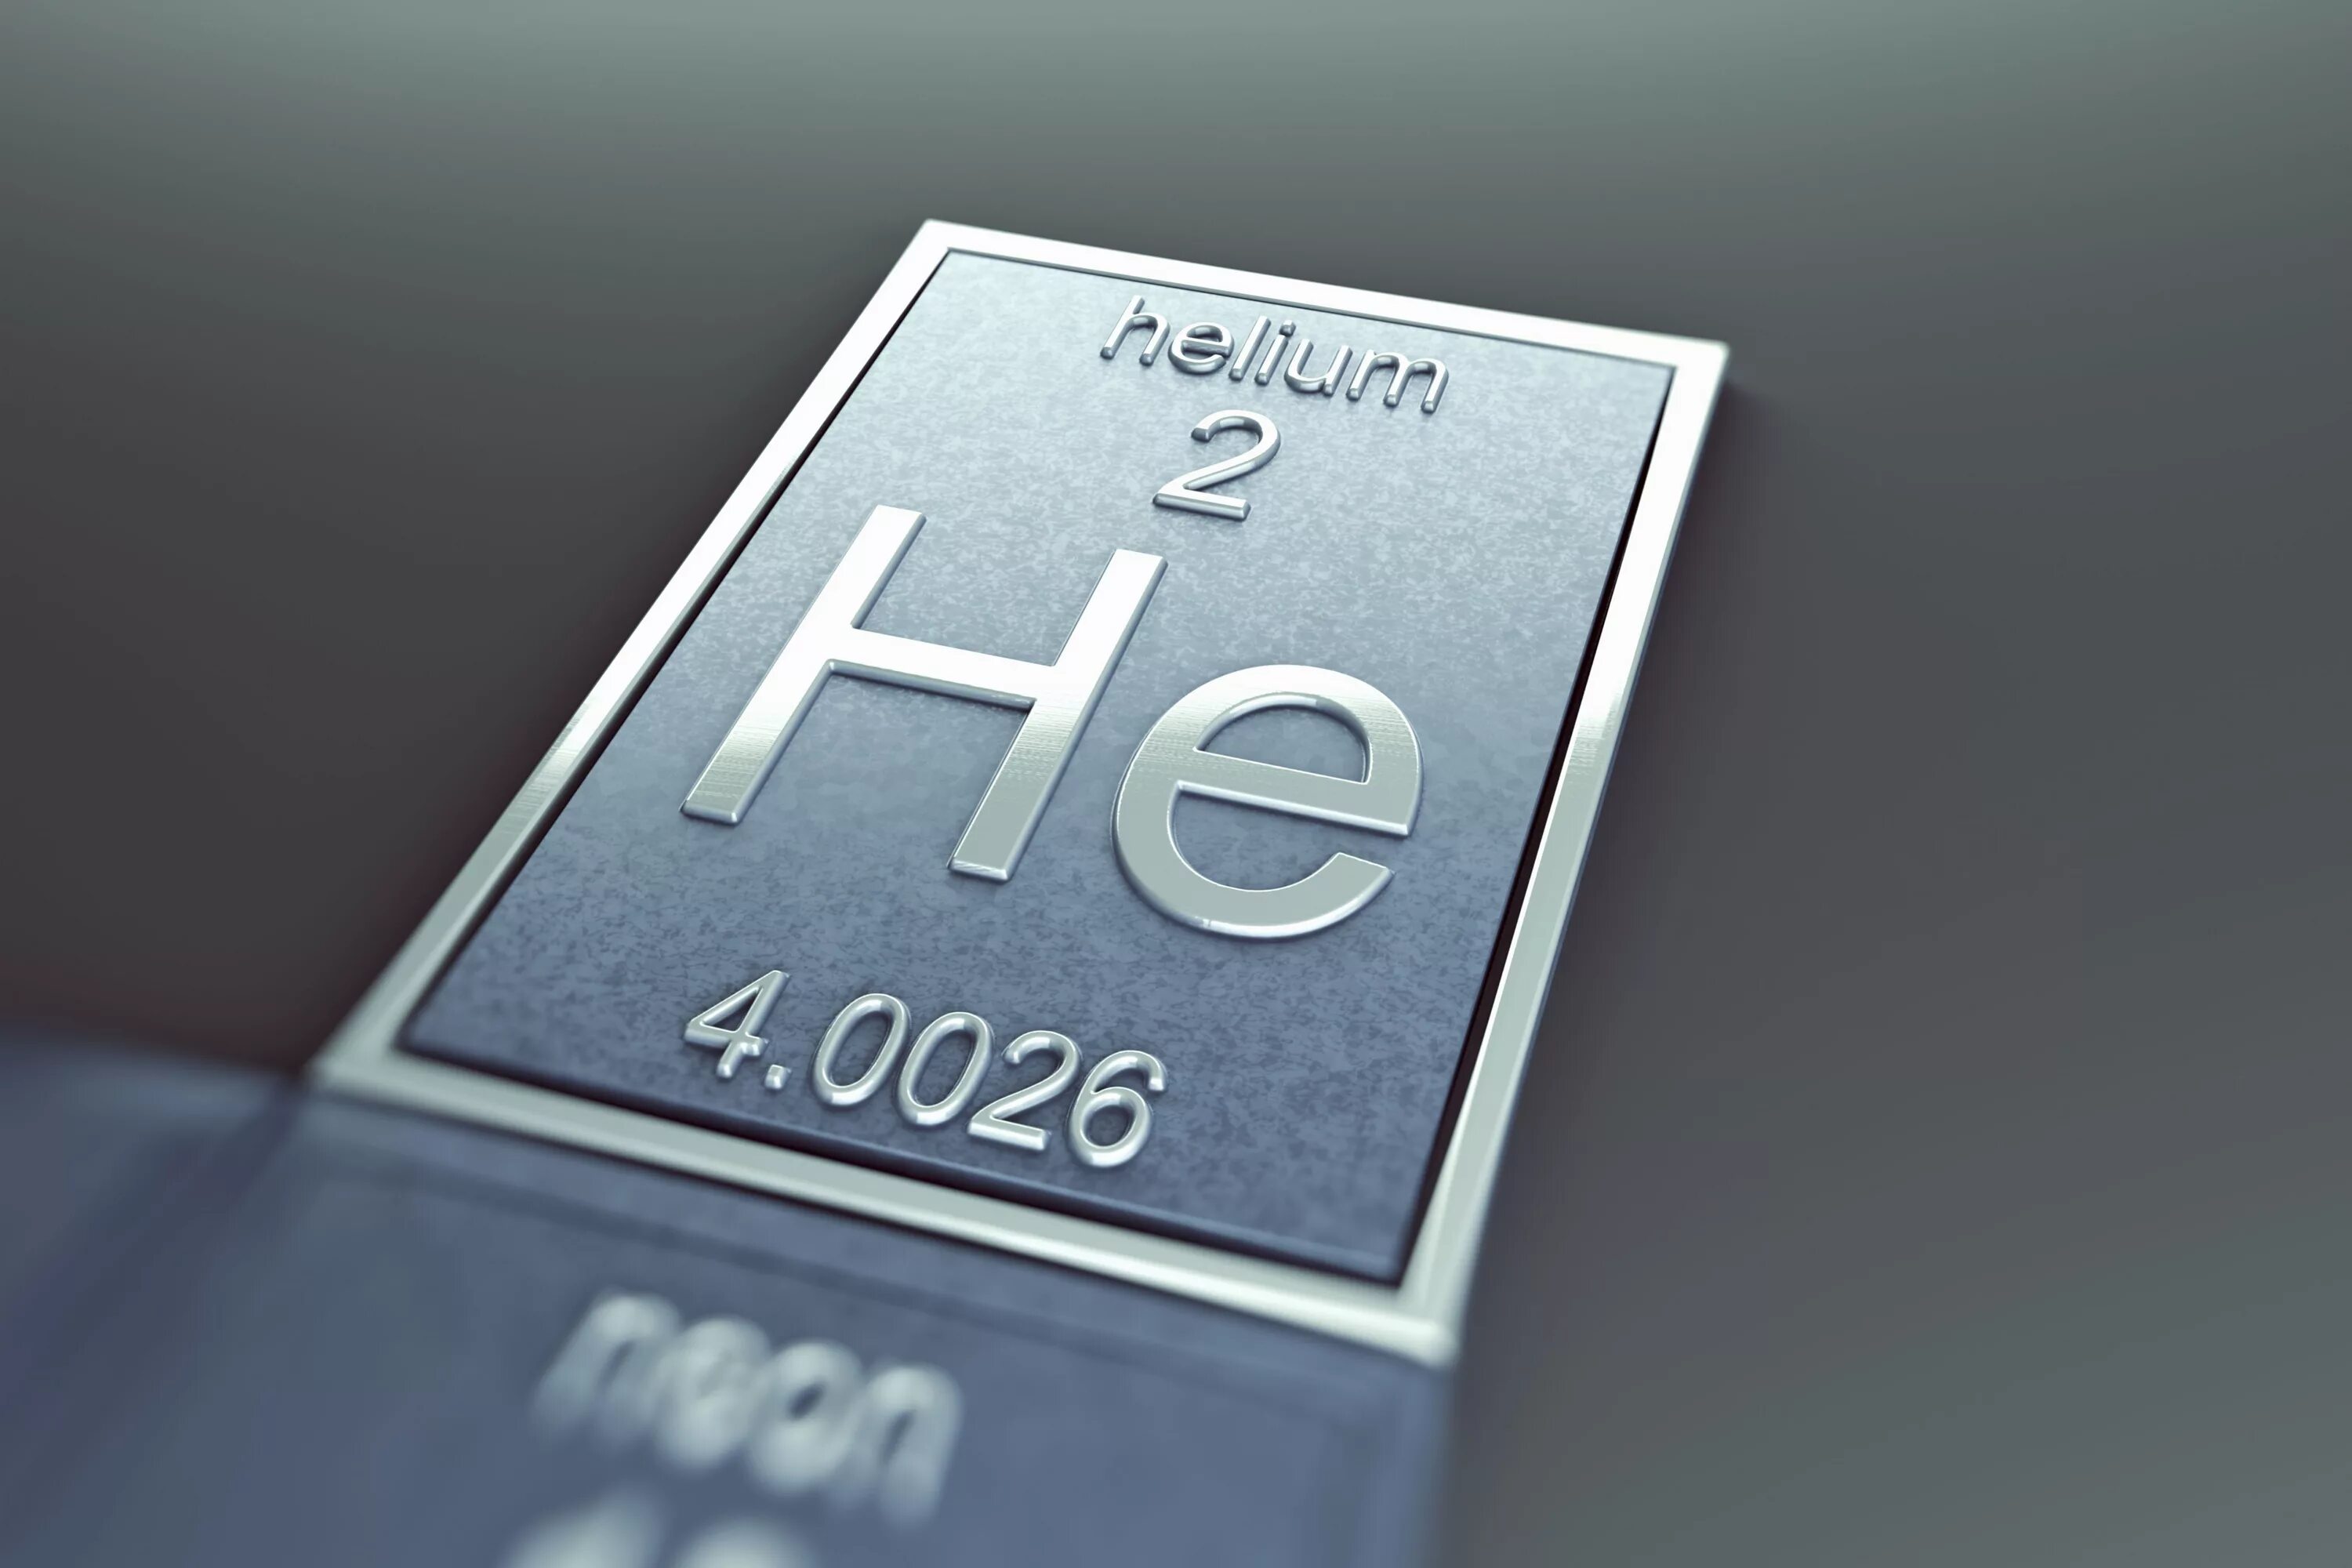 H химический элемент. Гелий химический элемент. Водород химический элемент. Химические элементы водород и гелий.